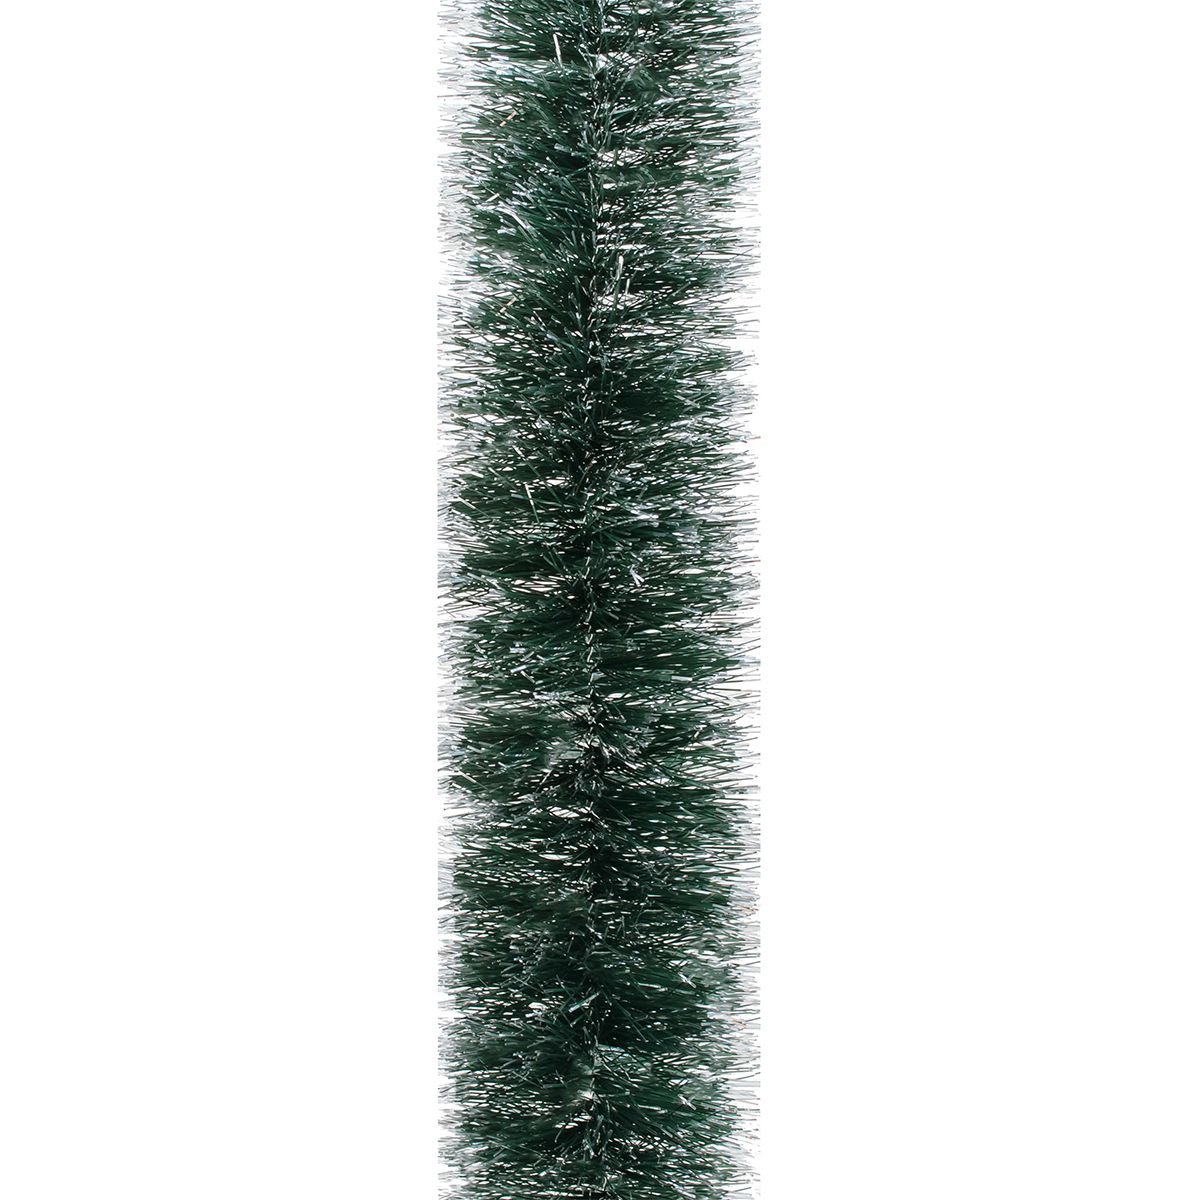 Мишура Novogod'ko 7.5 см 2 м зеленая с серебрянными кончиками (980439) - фото 1